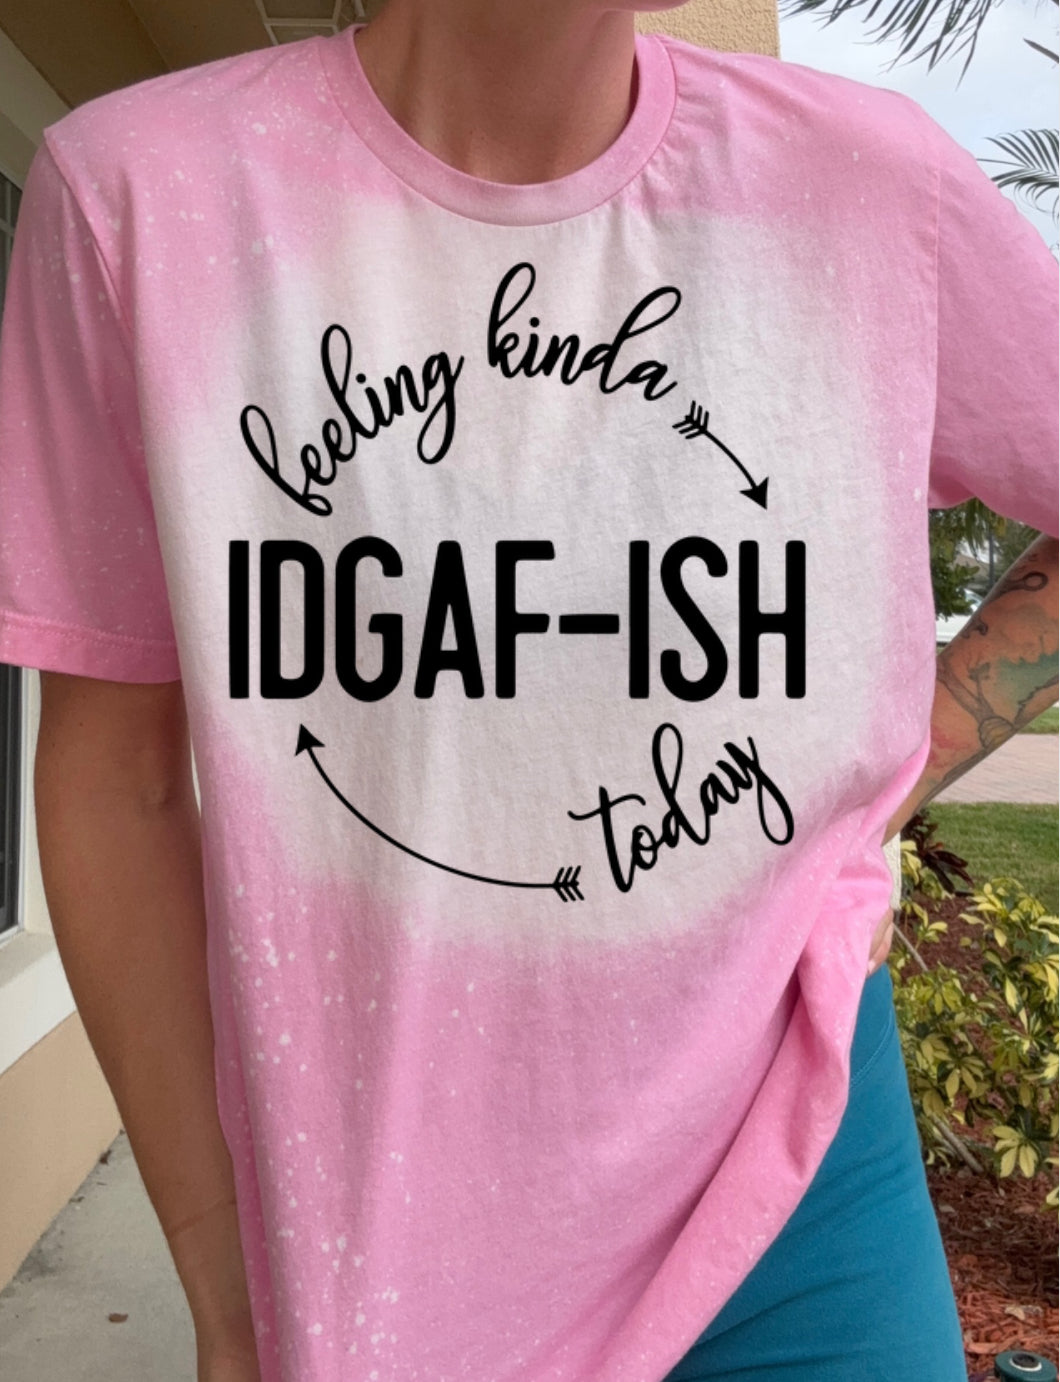 Feeling IDGAF -ish today tee shirt